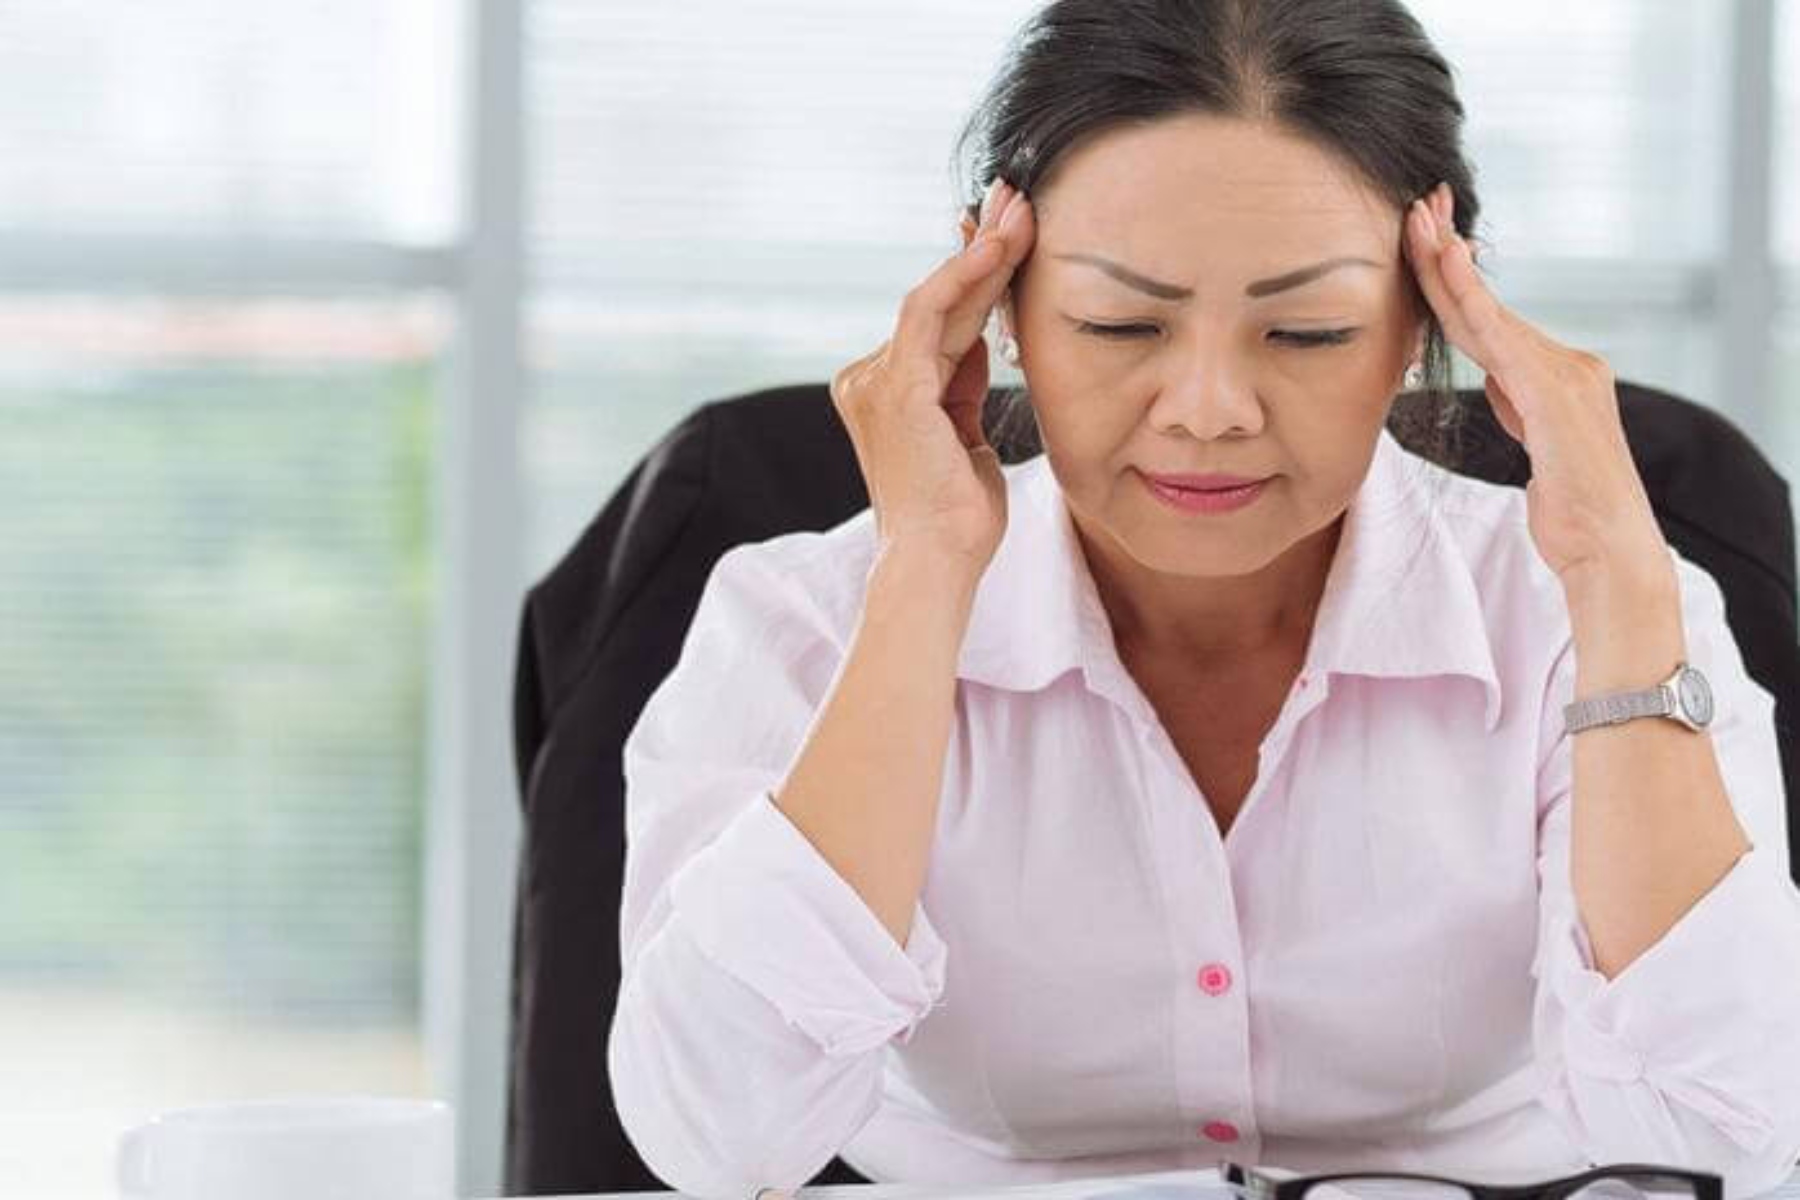 Εγκεφαλικό γυναίκες: Λιγότερο πιθανό να επιστρέψουν στην εργασία τους μετά από σοβαρό εγκεφαλικό